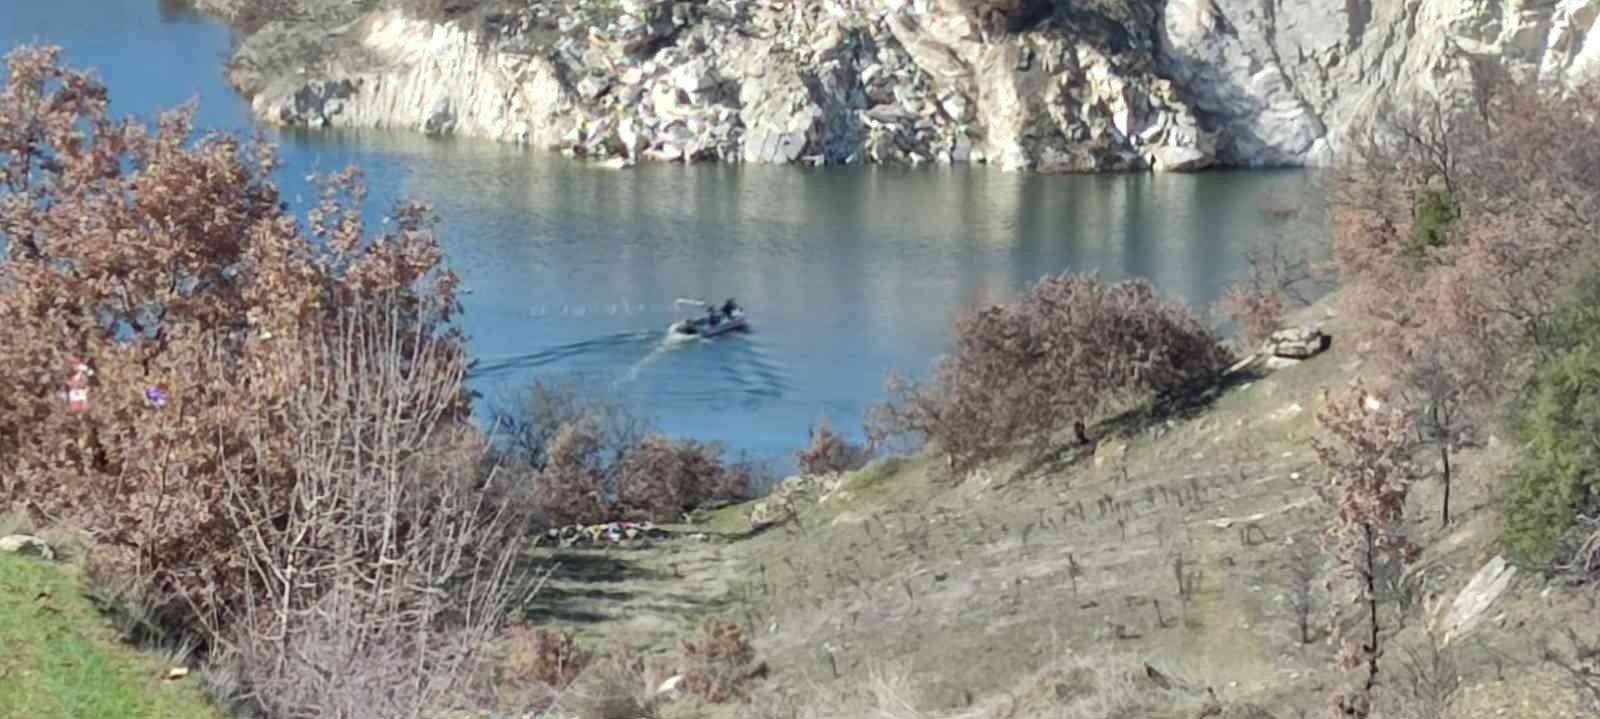 Gölette aranan avcı, Konya’daki asker arkadaşının yanından çıktı #denizli